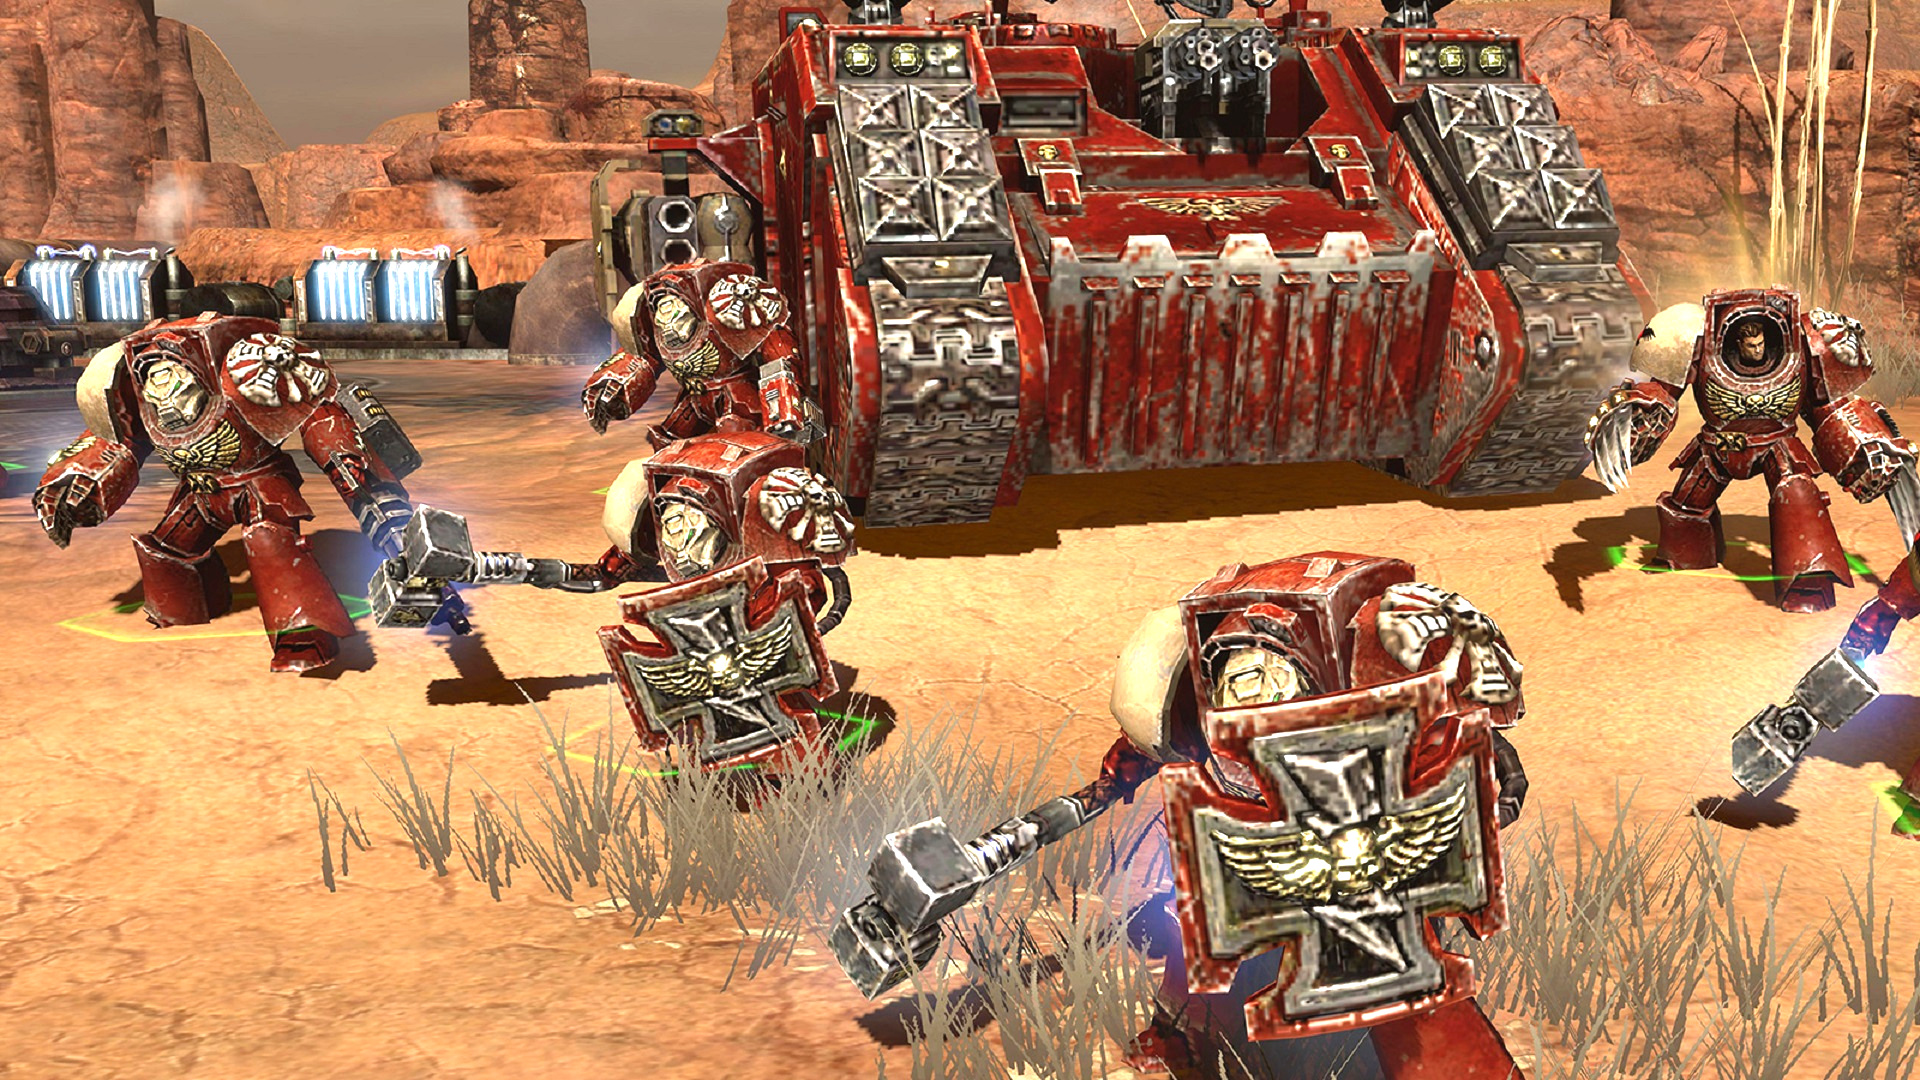 Warhammer-speletjies – die beste Warhammer- en Warhammer 40K-rekenaarspeletjies